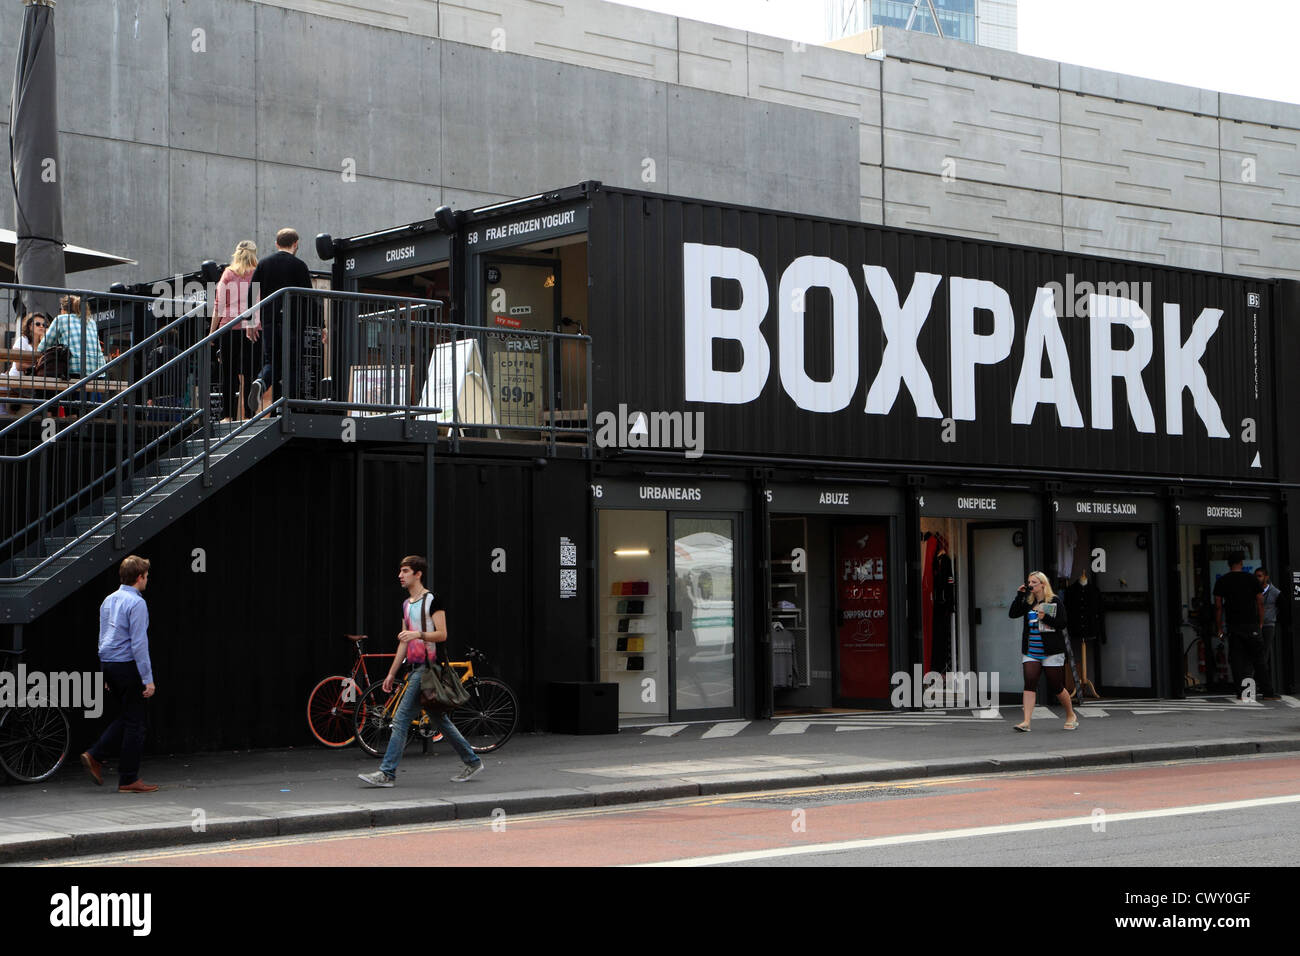 Boxpark, Shoreditch, London, UK Banque D'Images